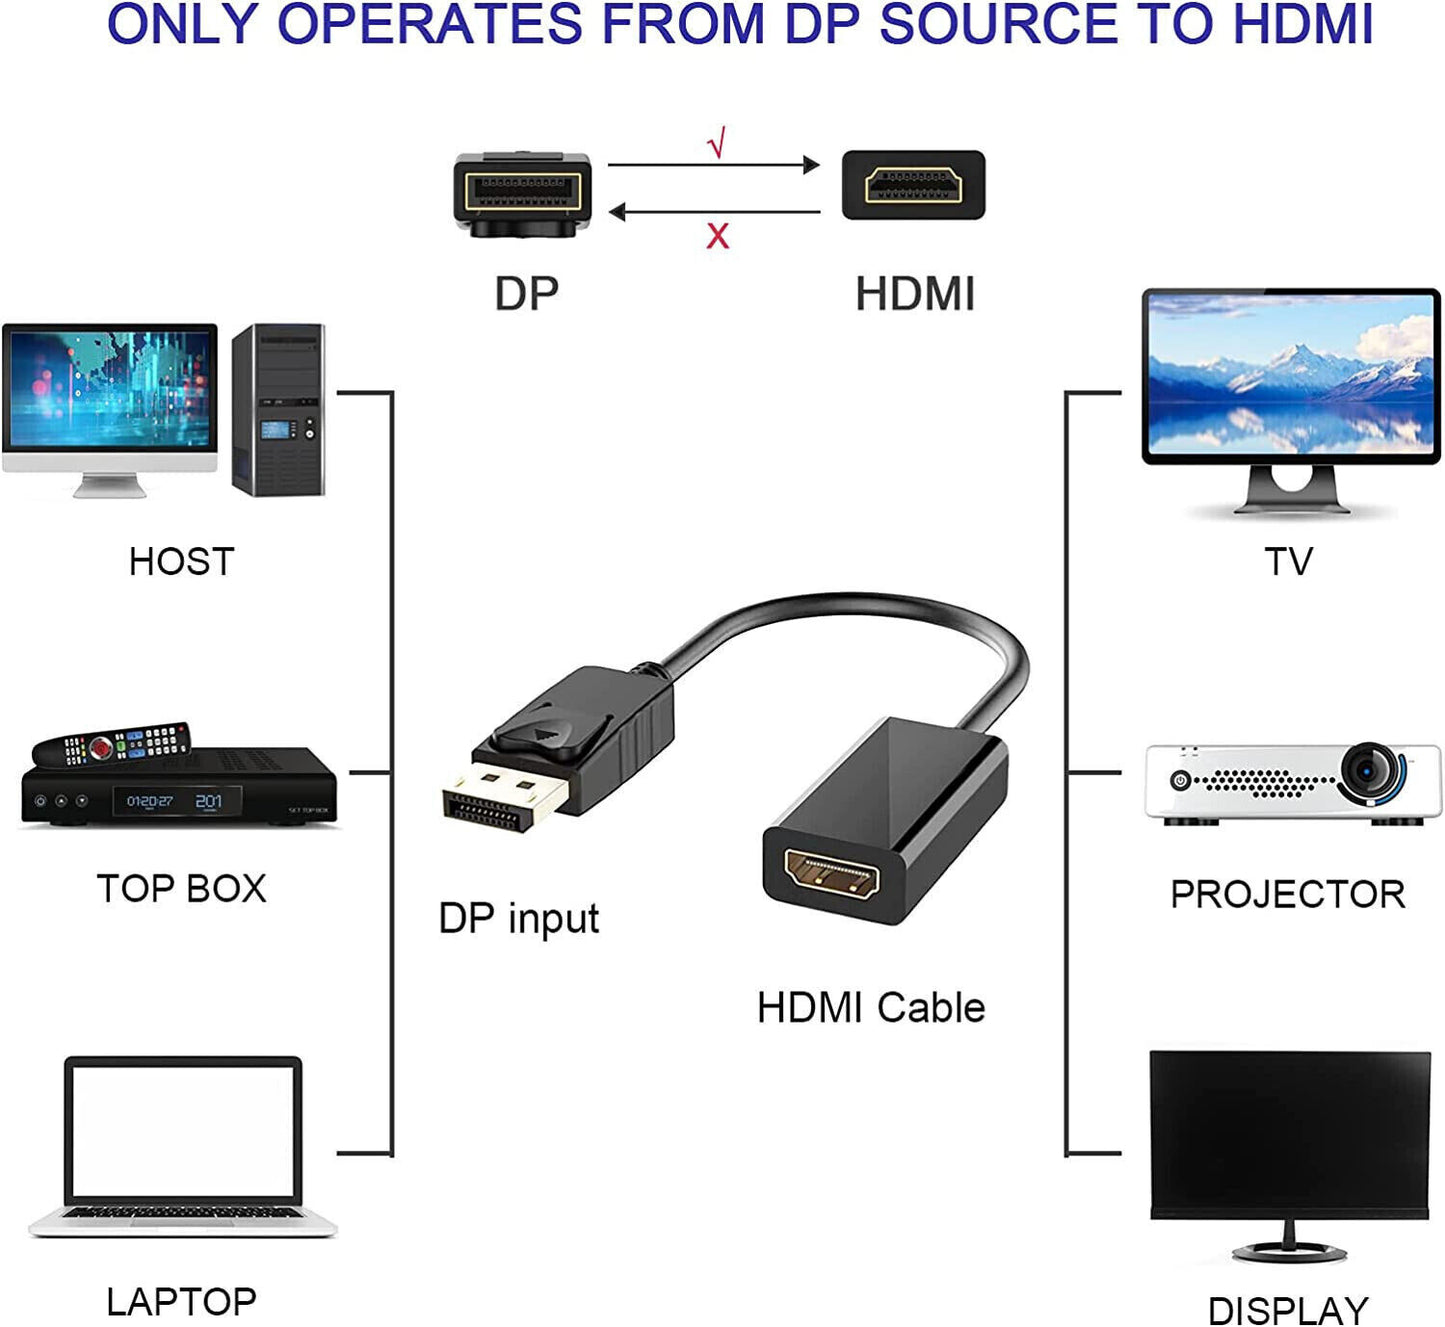 Cavo Adattatore da Displayport a HDMI Ipertek per Monitor Proiettori hdtv